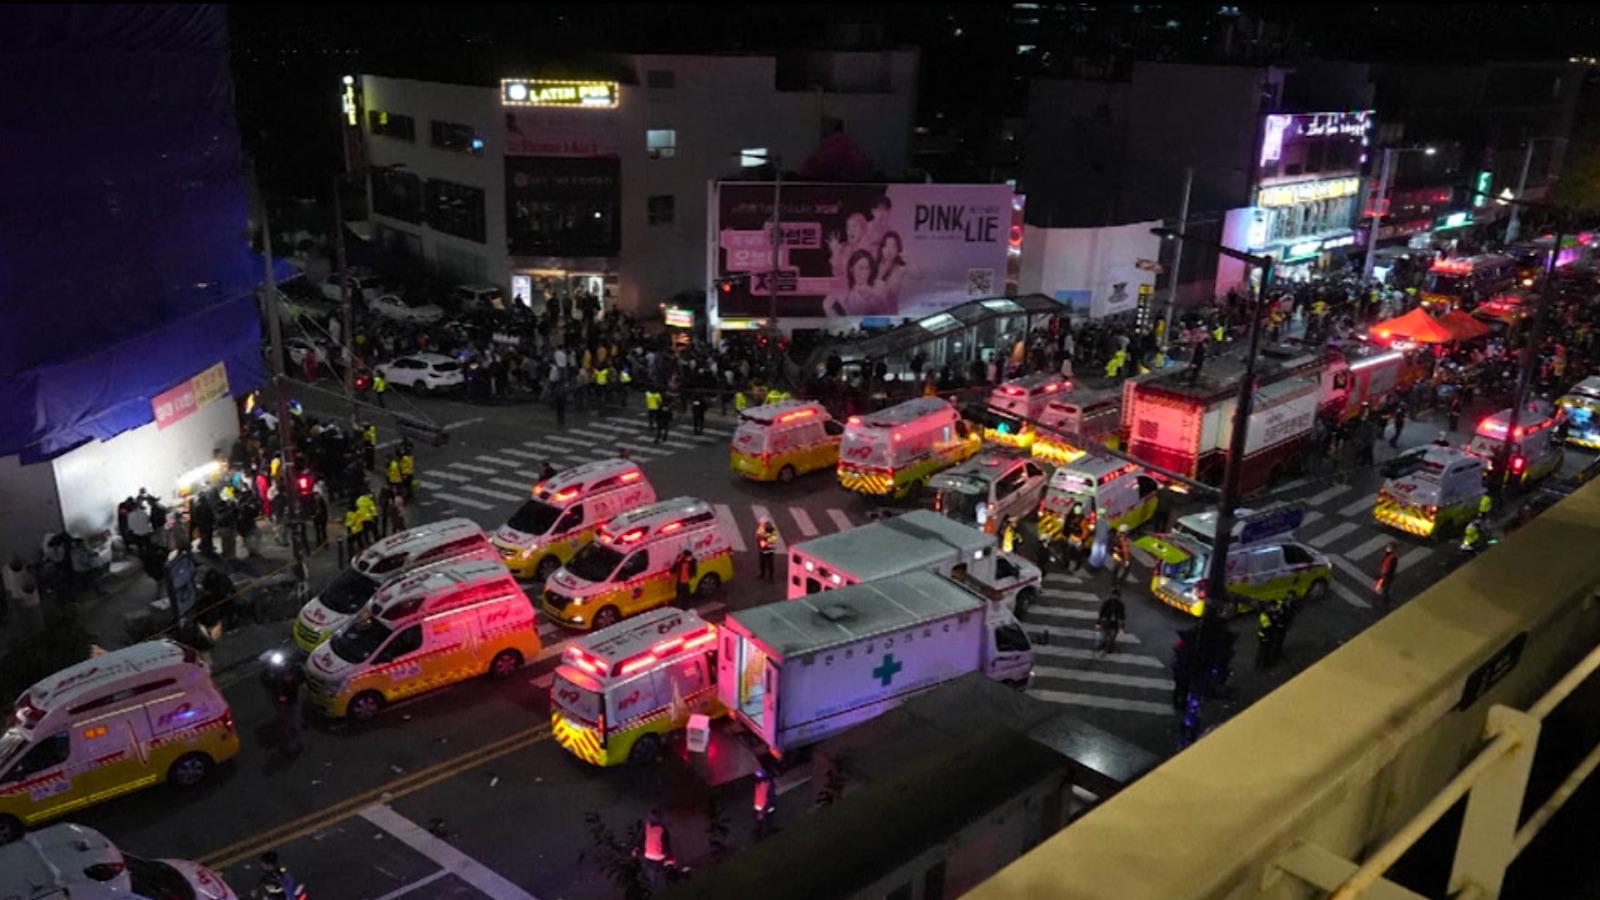 Imagini surprinse după tragedia din Seul